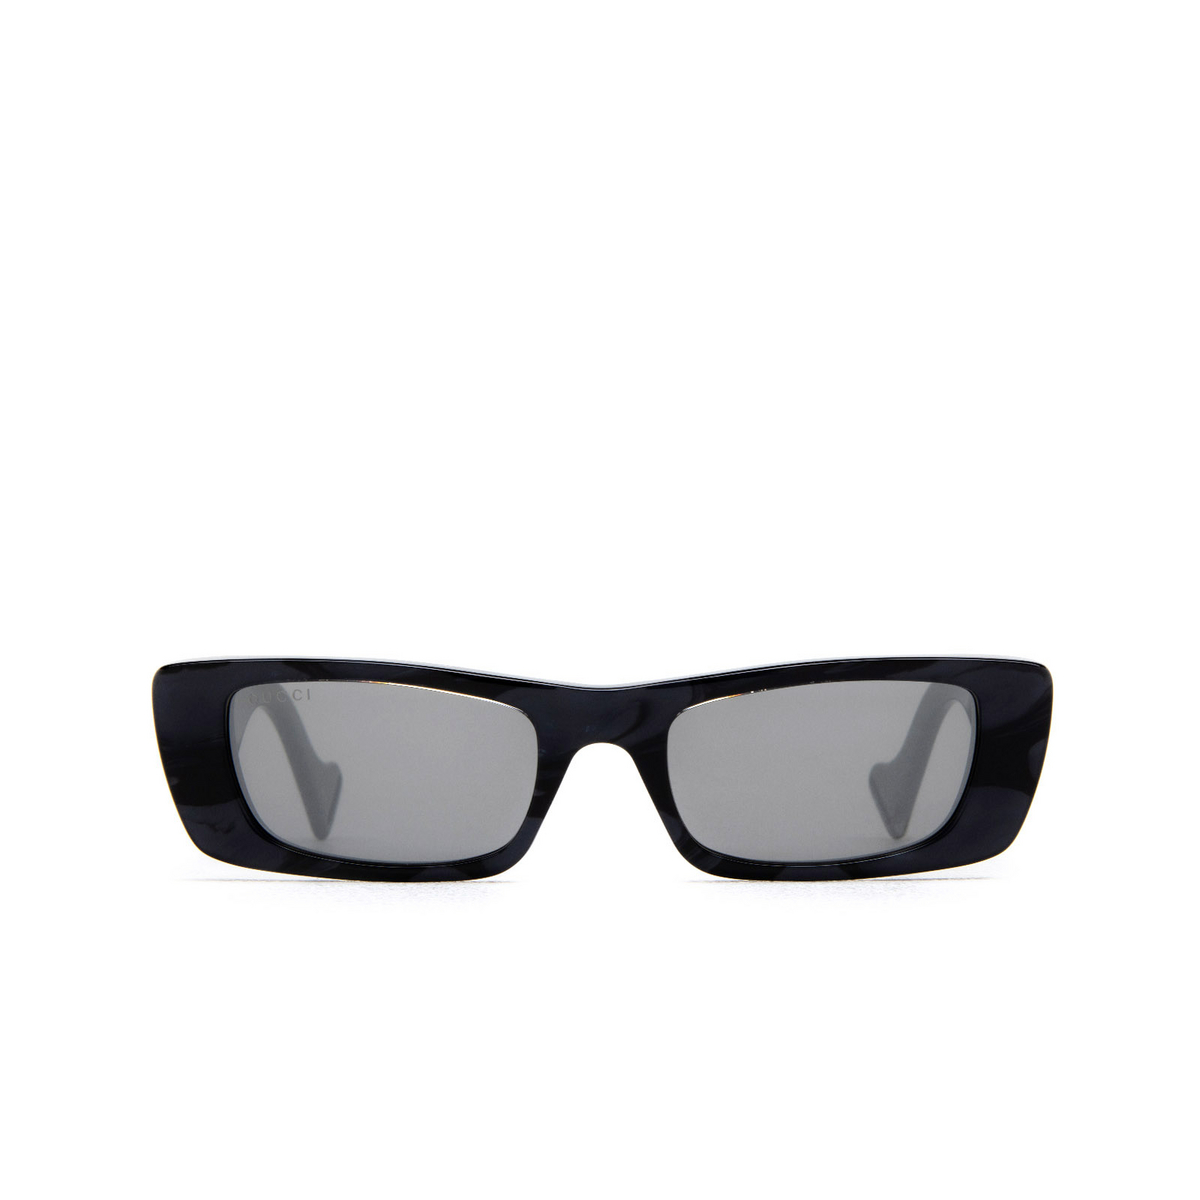 Sunglasses Gucci GG0516S - Mia Burton